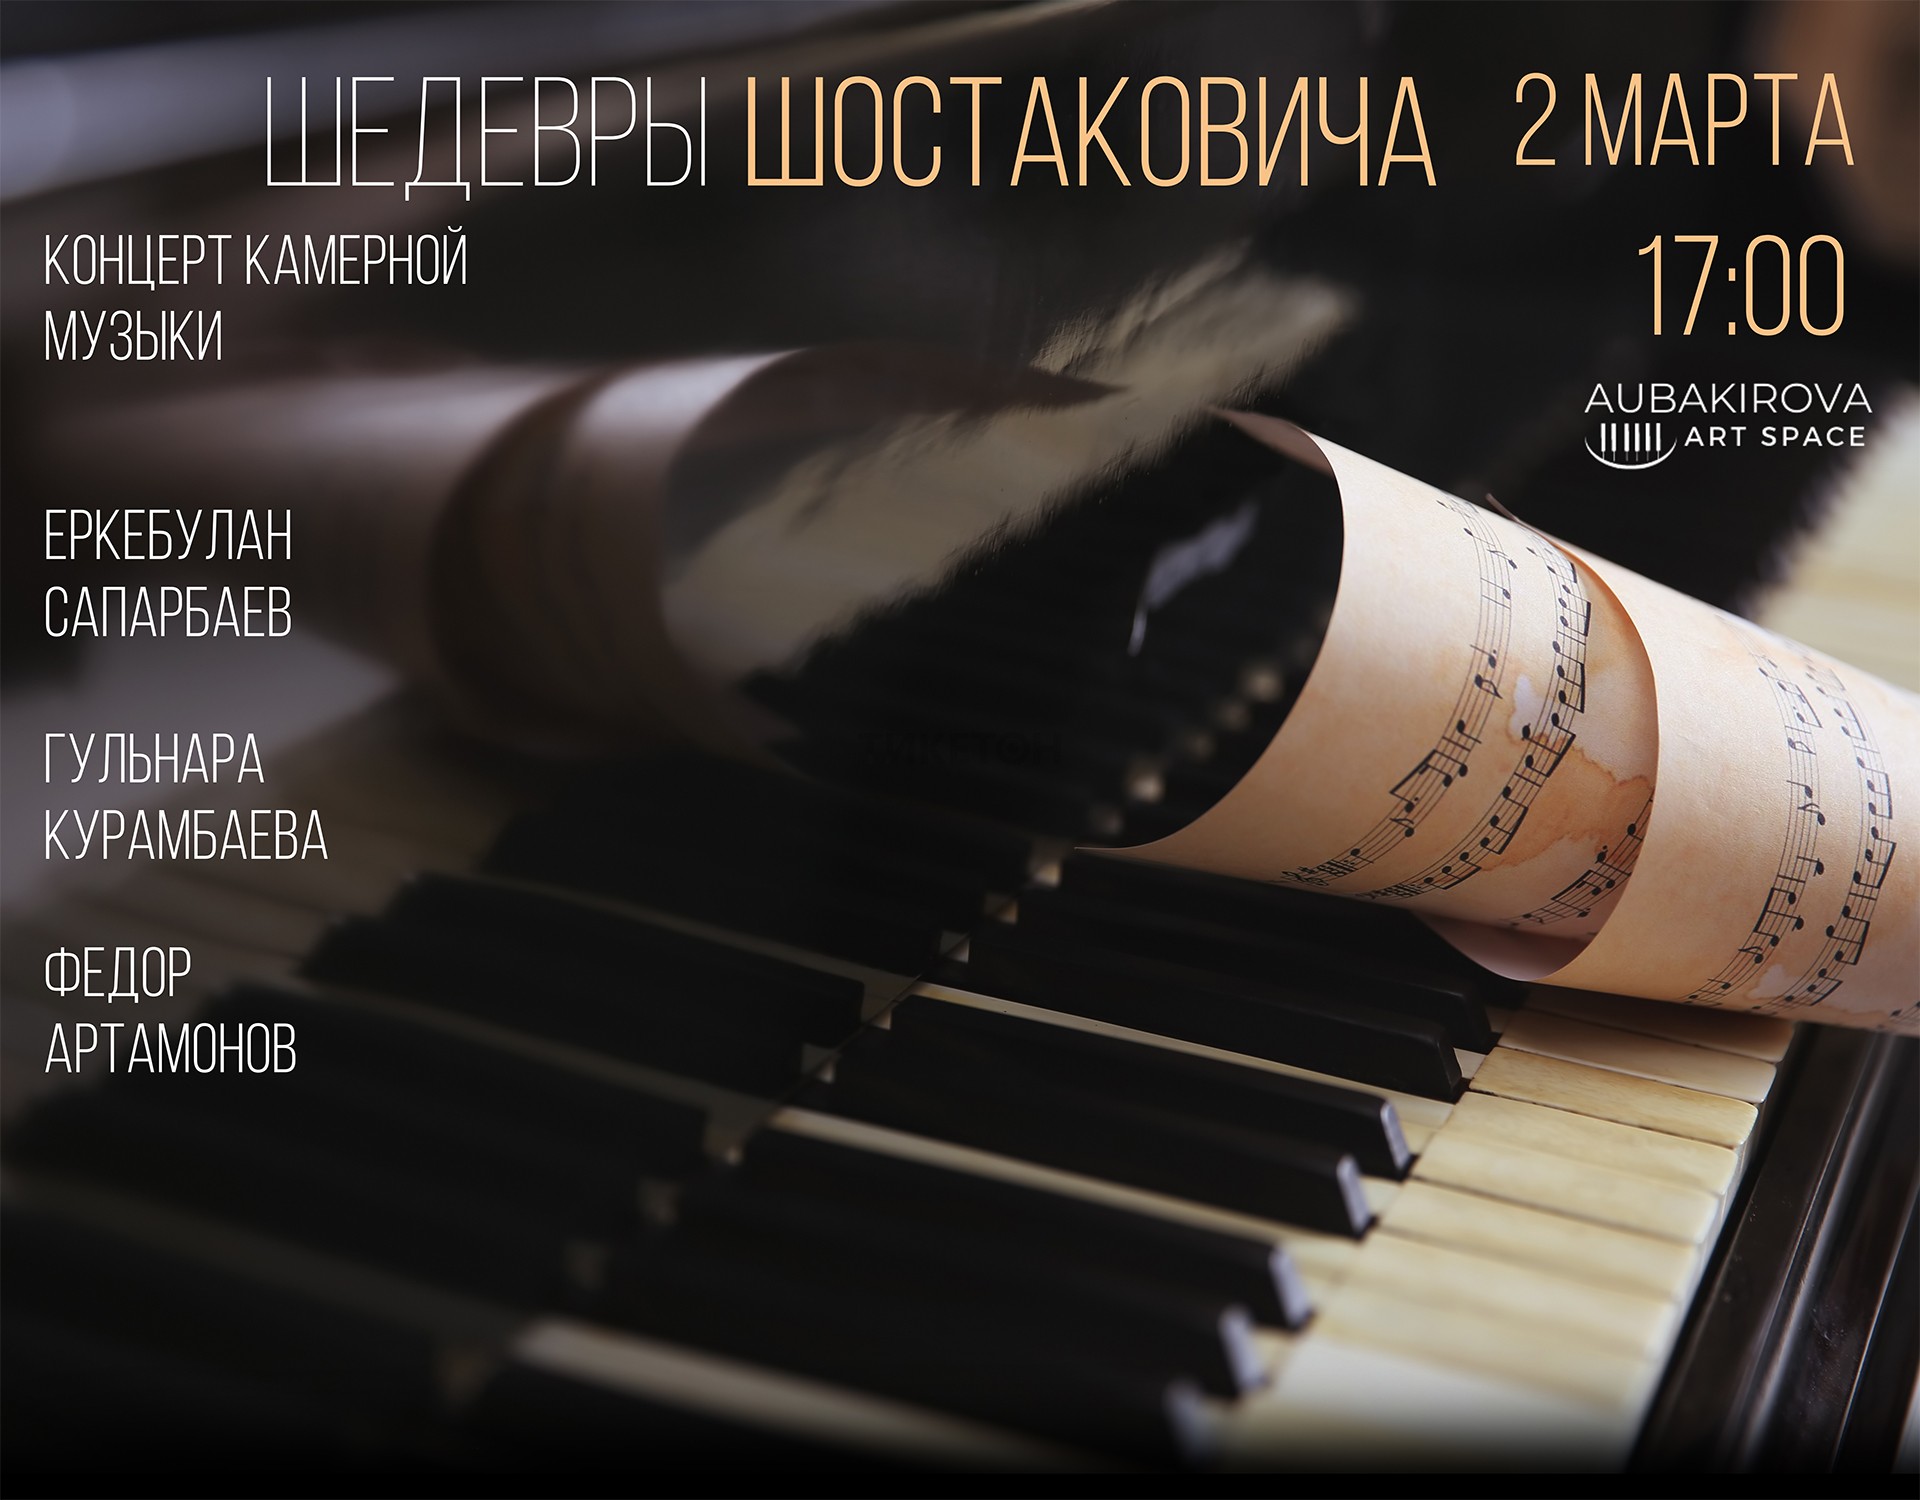 Шедевры Шостаковича. Концерт камерной музыки в Алматы